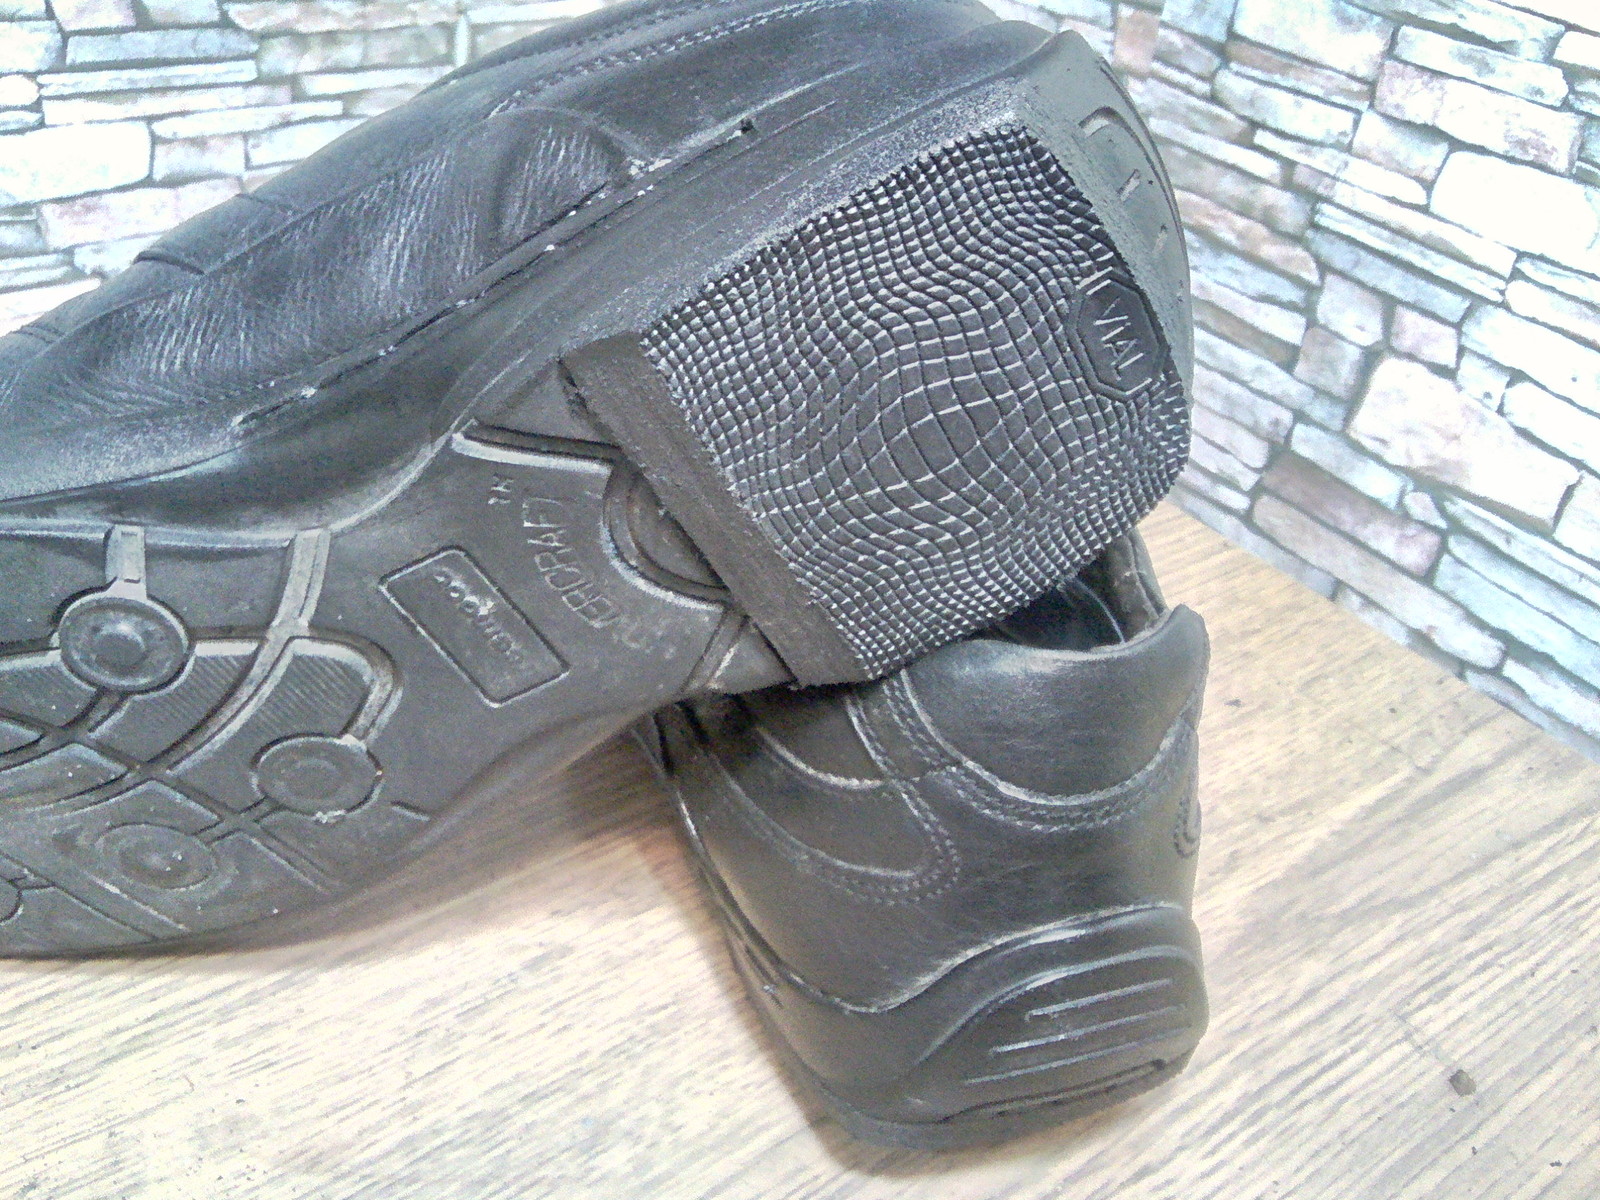 Heels on a flat sole. - My, Shoe repair, Heels, Work, Longpost